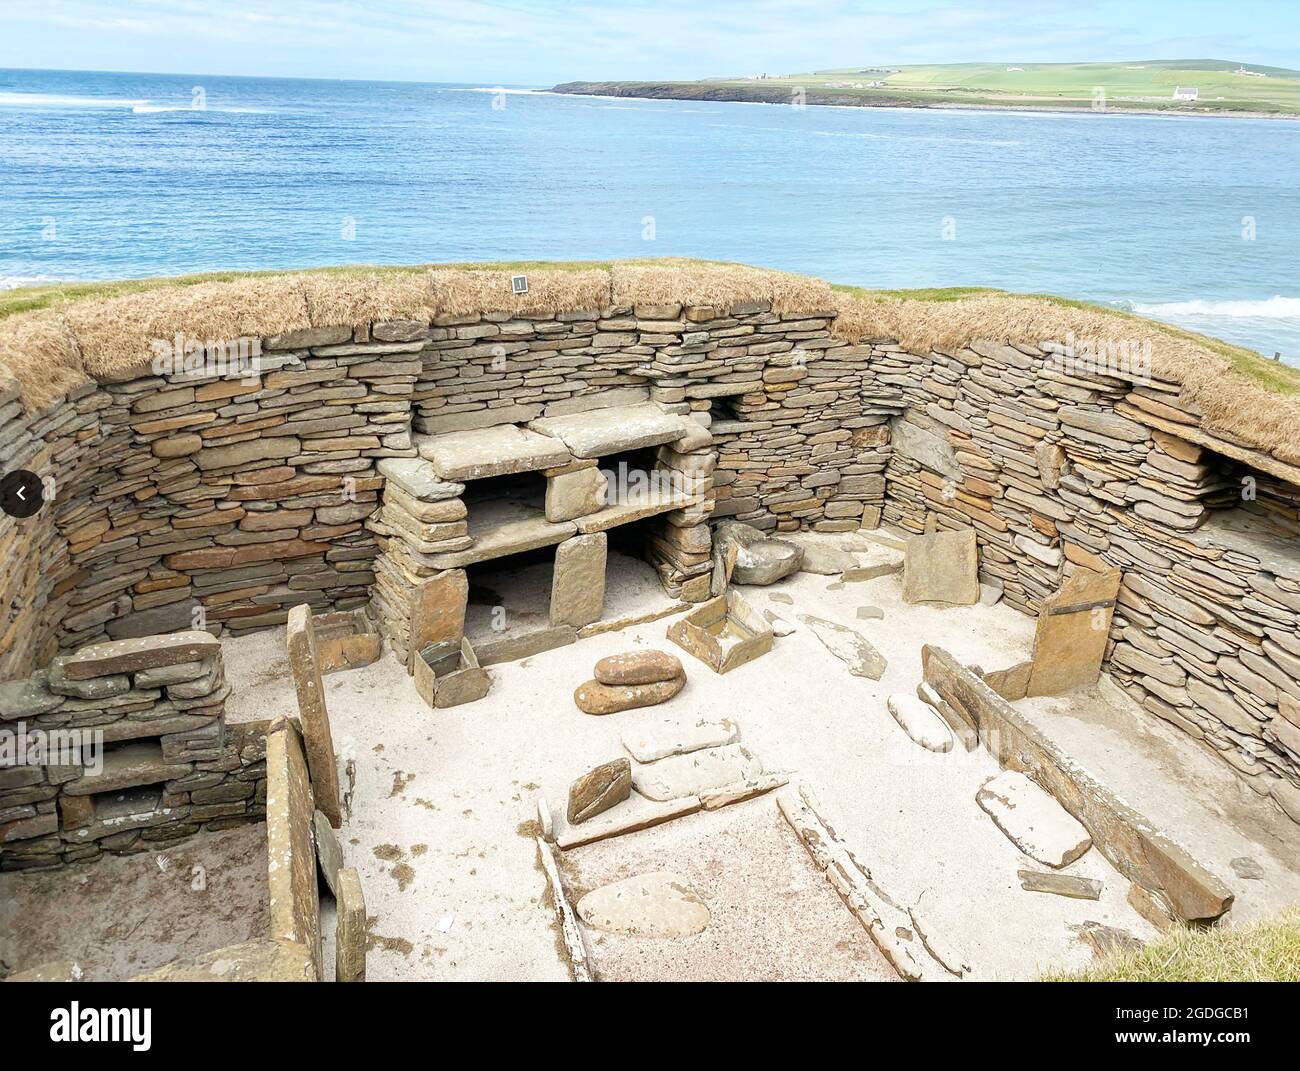 SKARA BRAE insediamento neolitico che domina la baia di Skaill sull'isola continentale di Orkney, Scozia. Foto: Tony Gale Foto Stock